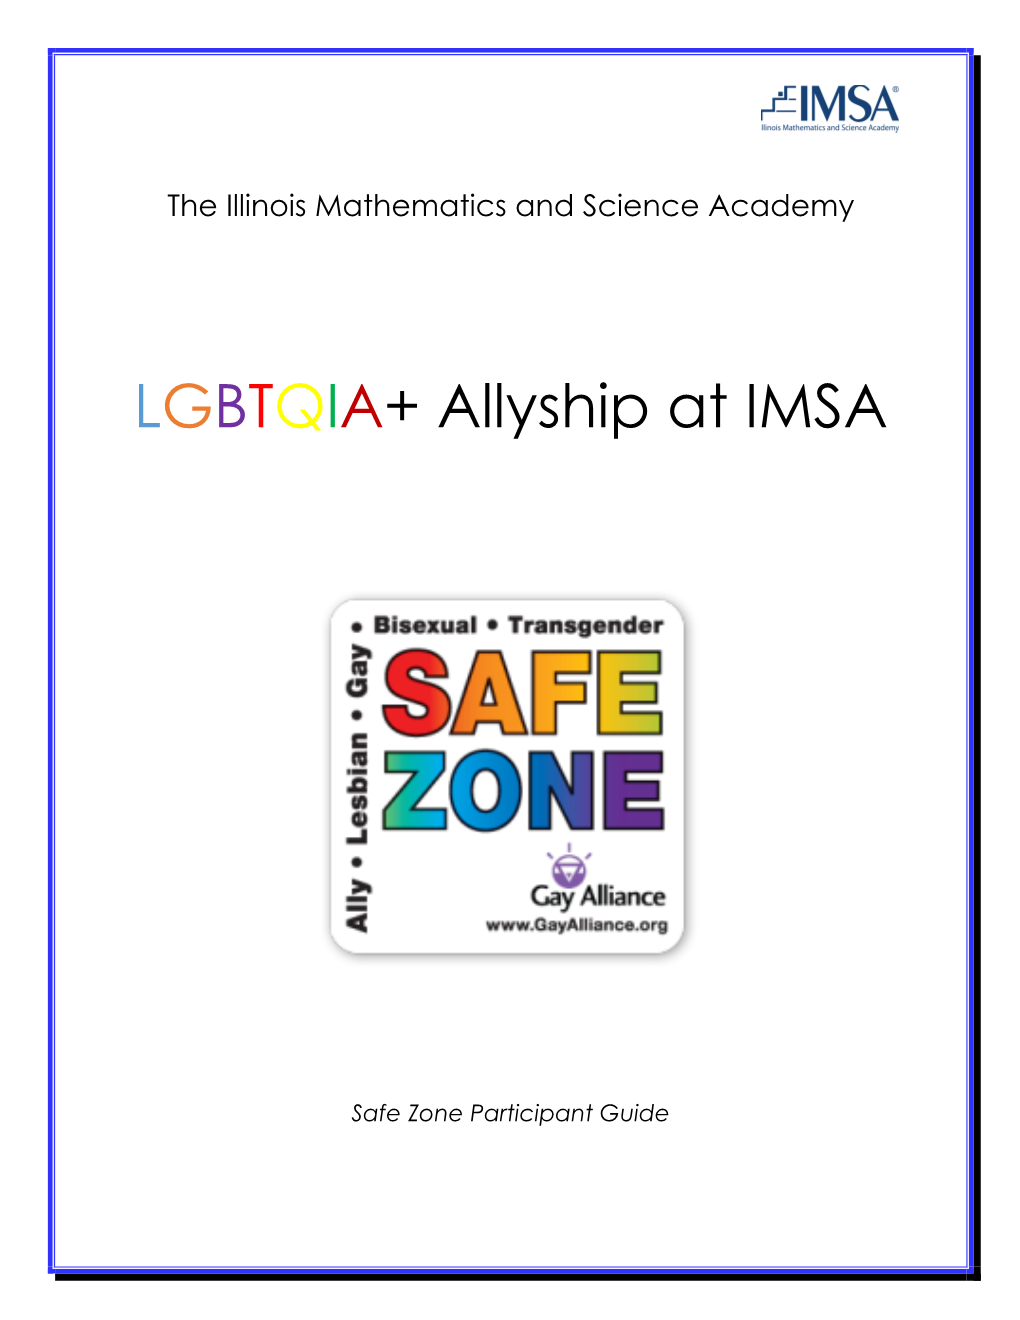 LGBTQIA+ Allyship at IMSA